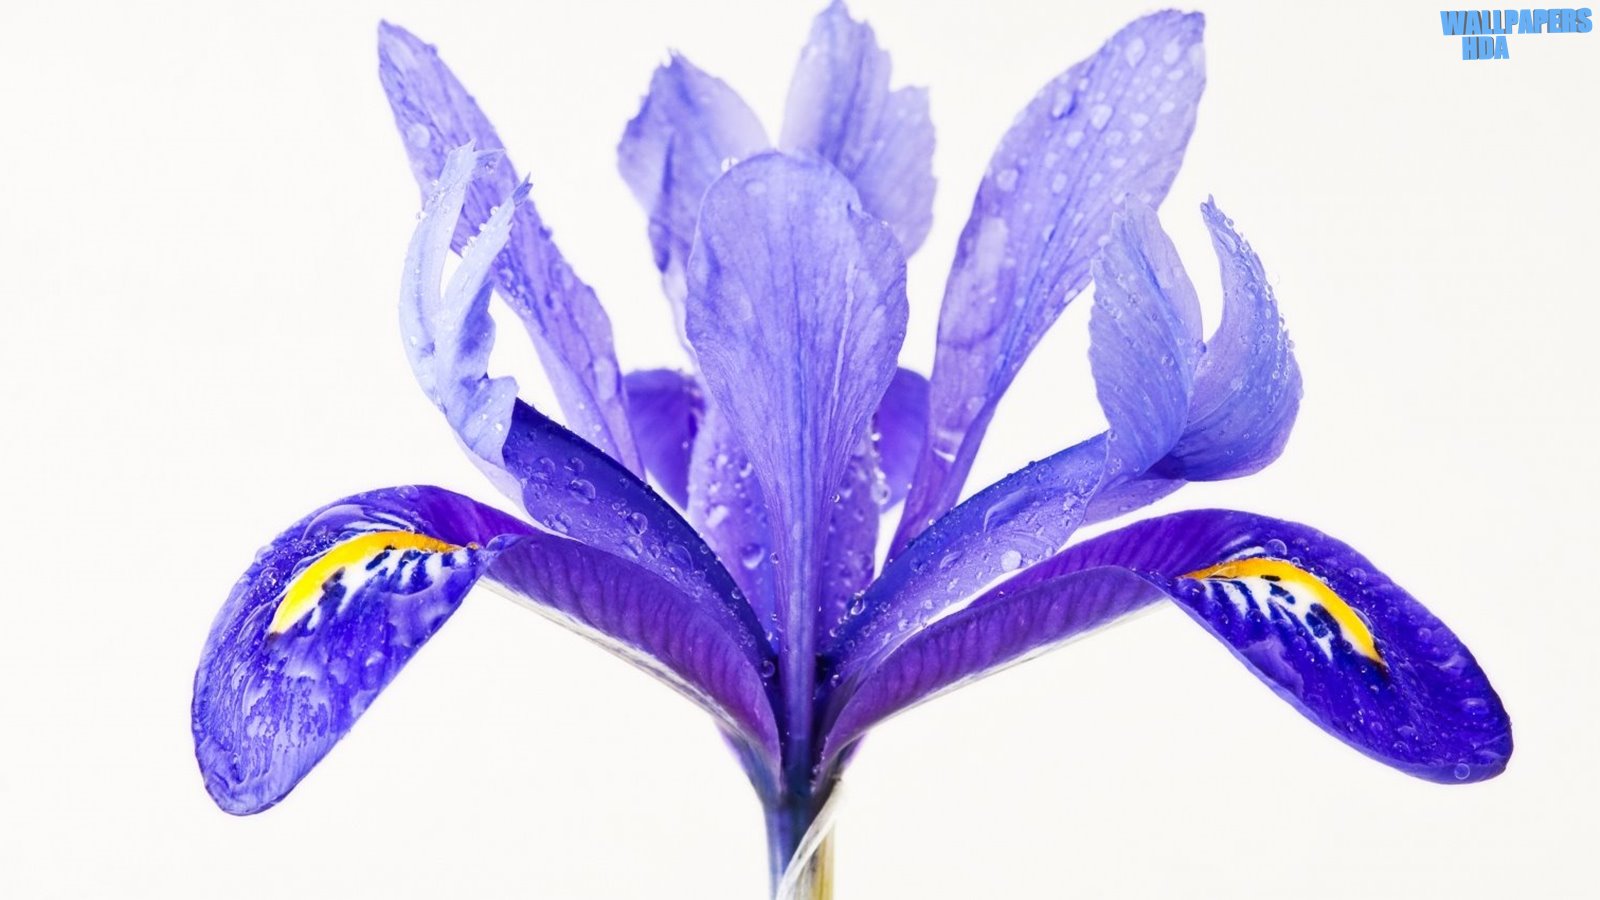 Water drops on a purple iris flower wallpaper 1600x900